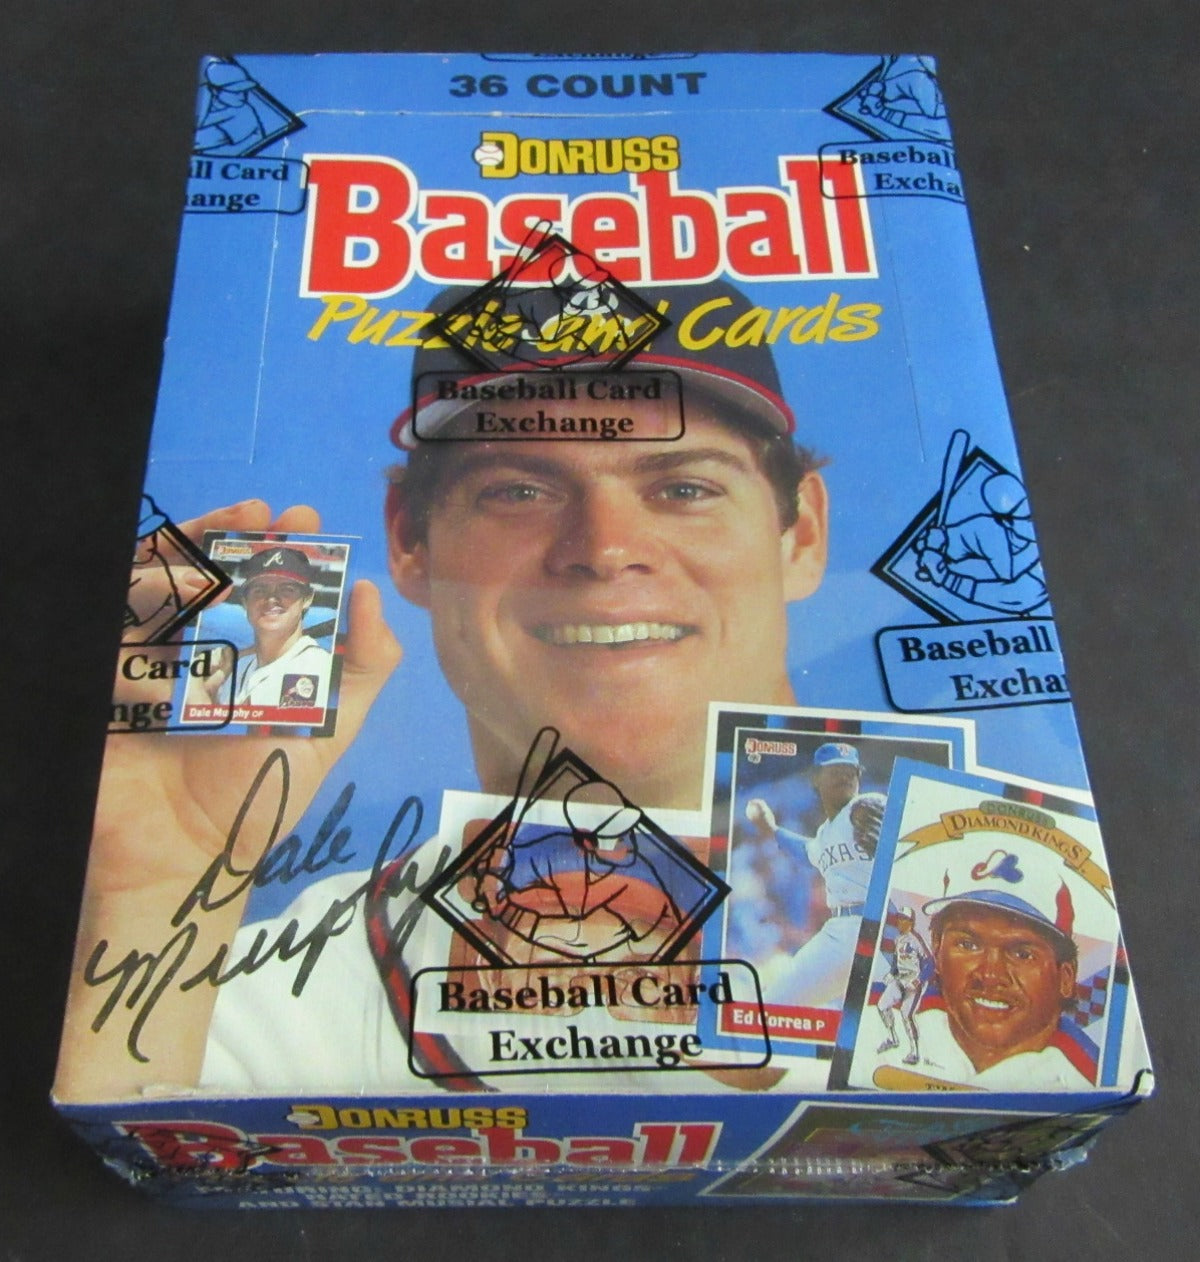 1988 Donruss Baseball Unopened Wax Box (FASC)